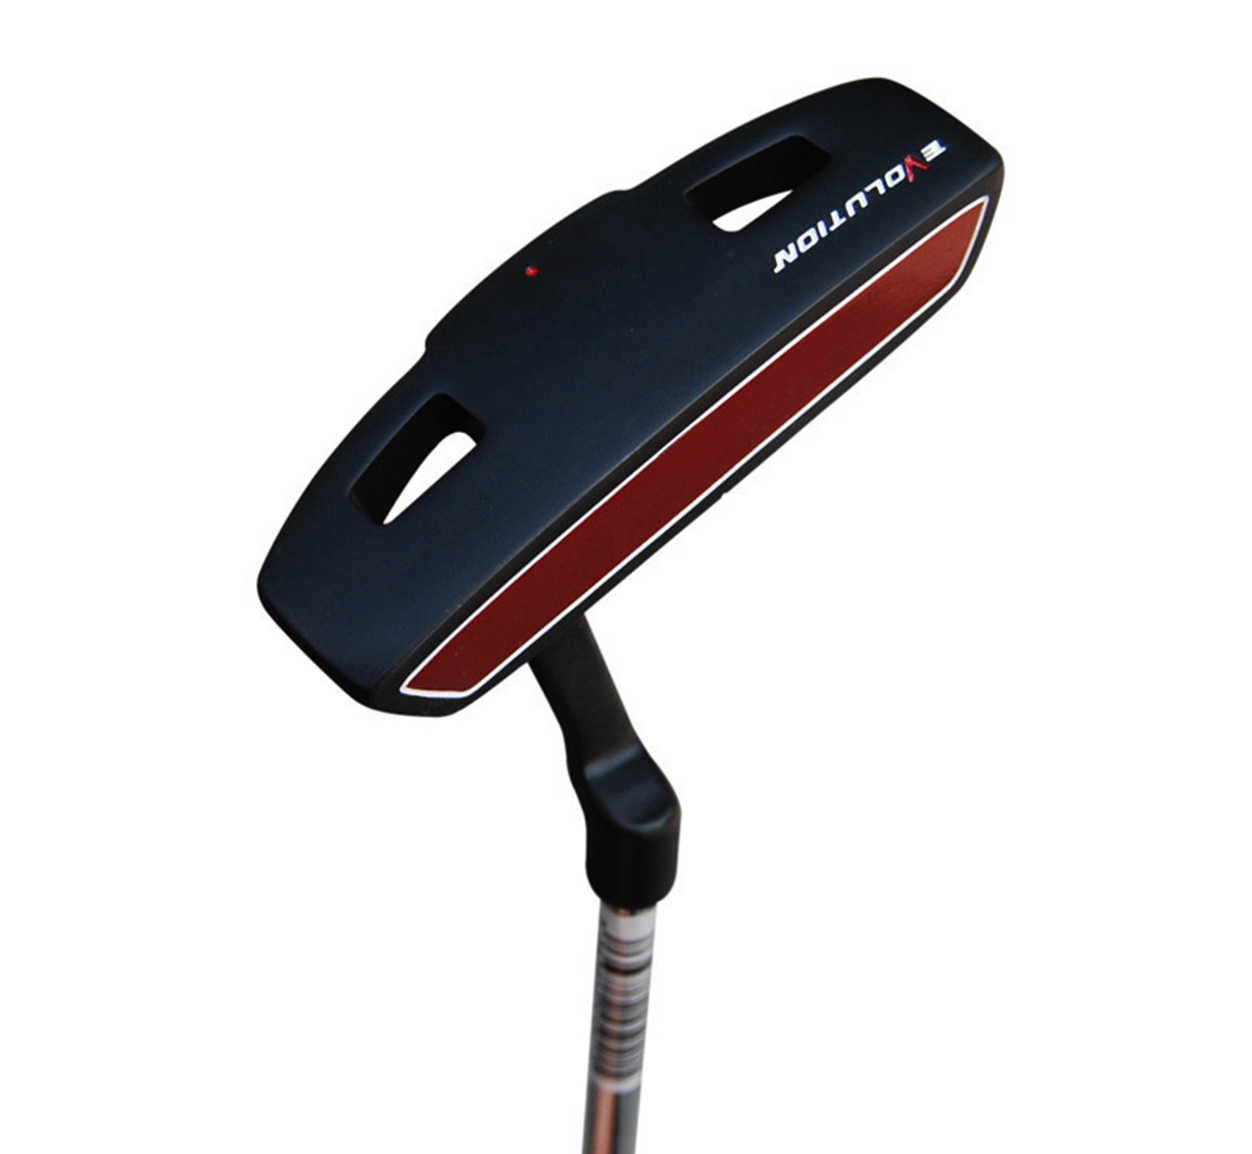 Posma GCP01D高品質不銹鋼桿身高爾夫推桿, 7號桿,雙層比賽球3合1套裝,附送Posma輕便高爾夫球桿包